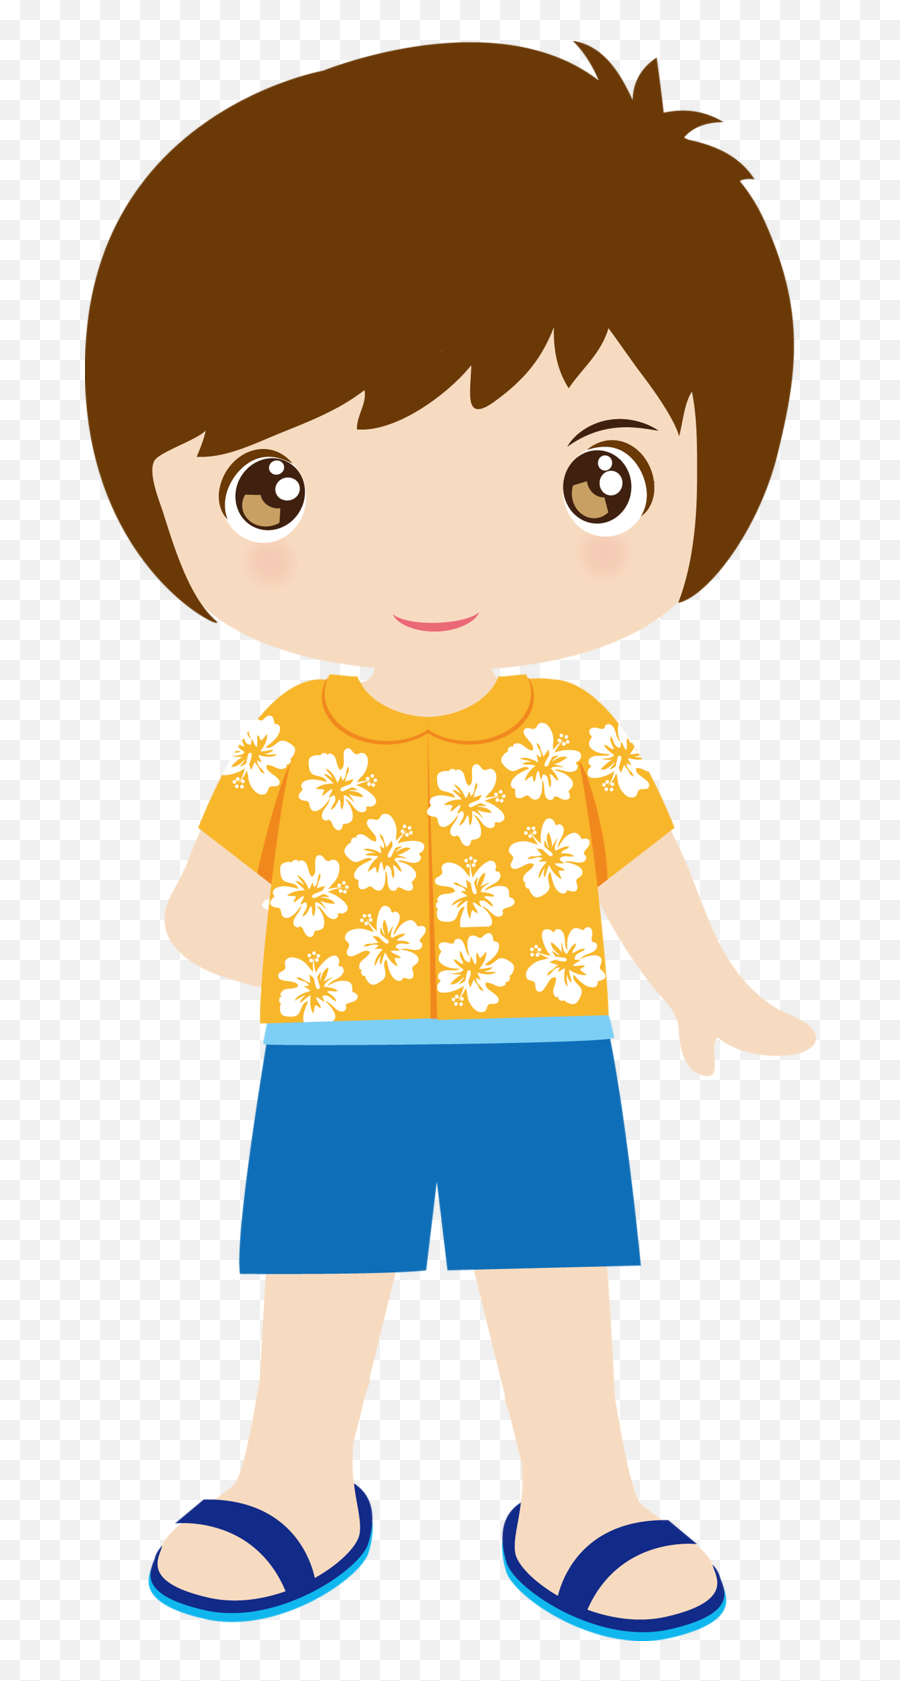 U2022u2022u203fu2040summeru203fu2040u2022u2022 - Hawaiian Boy Png Clipart Full Boneco Havaiano Desenho Emoji,Hawaiian Clipart